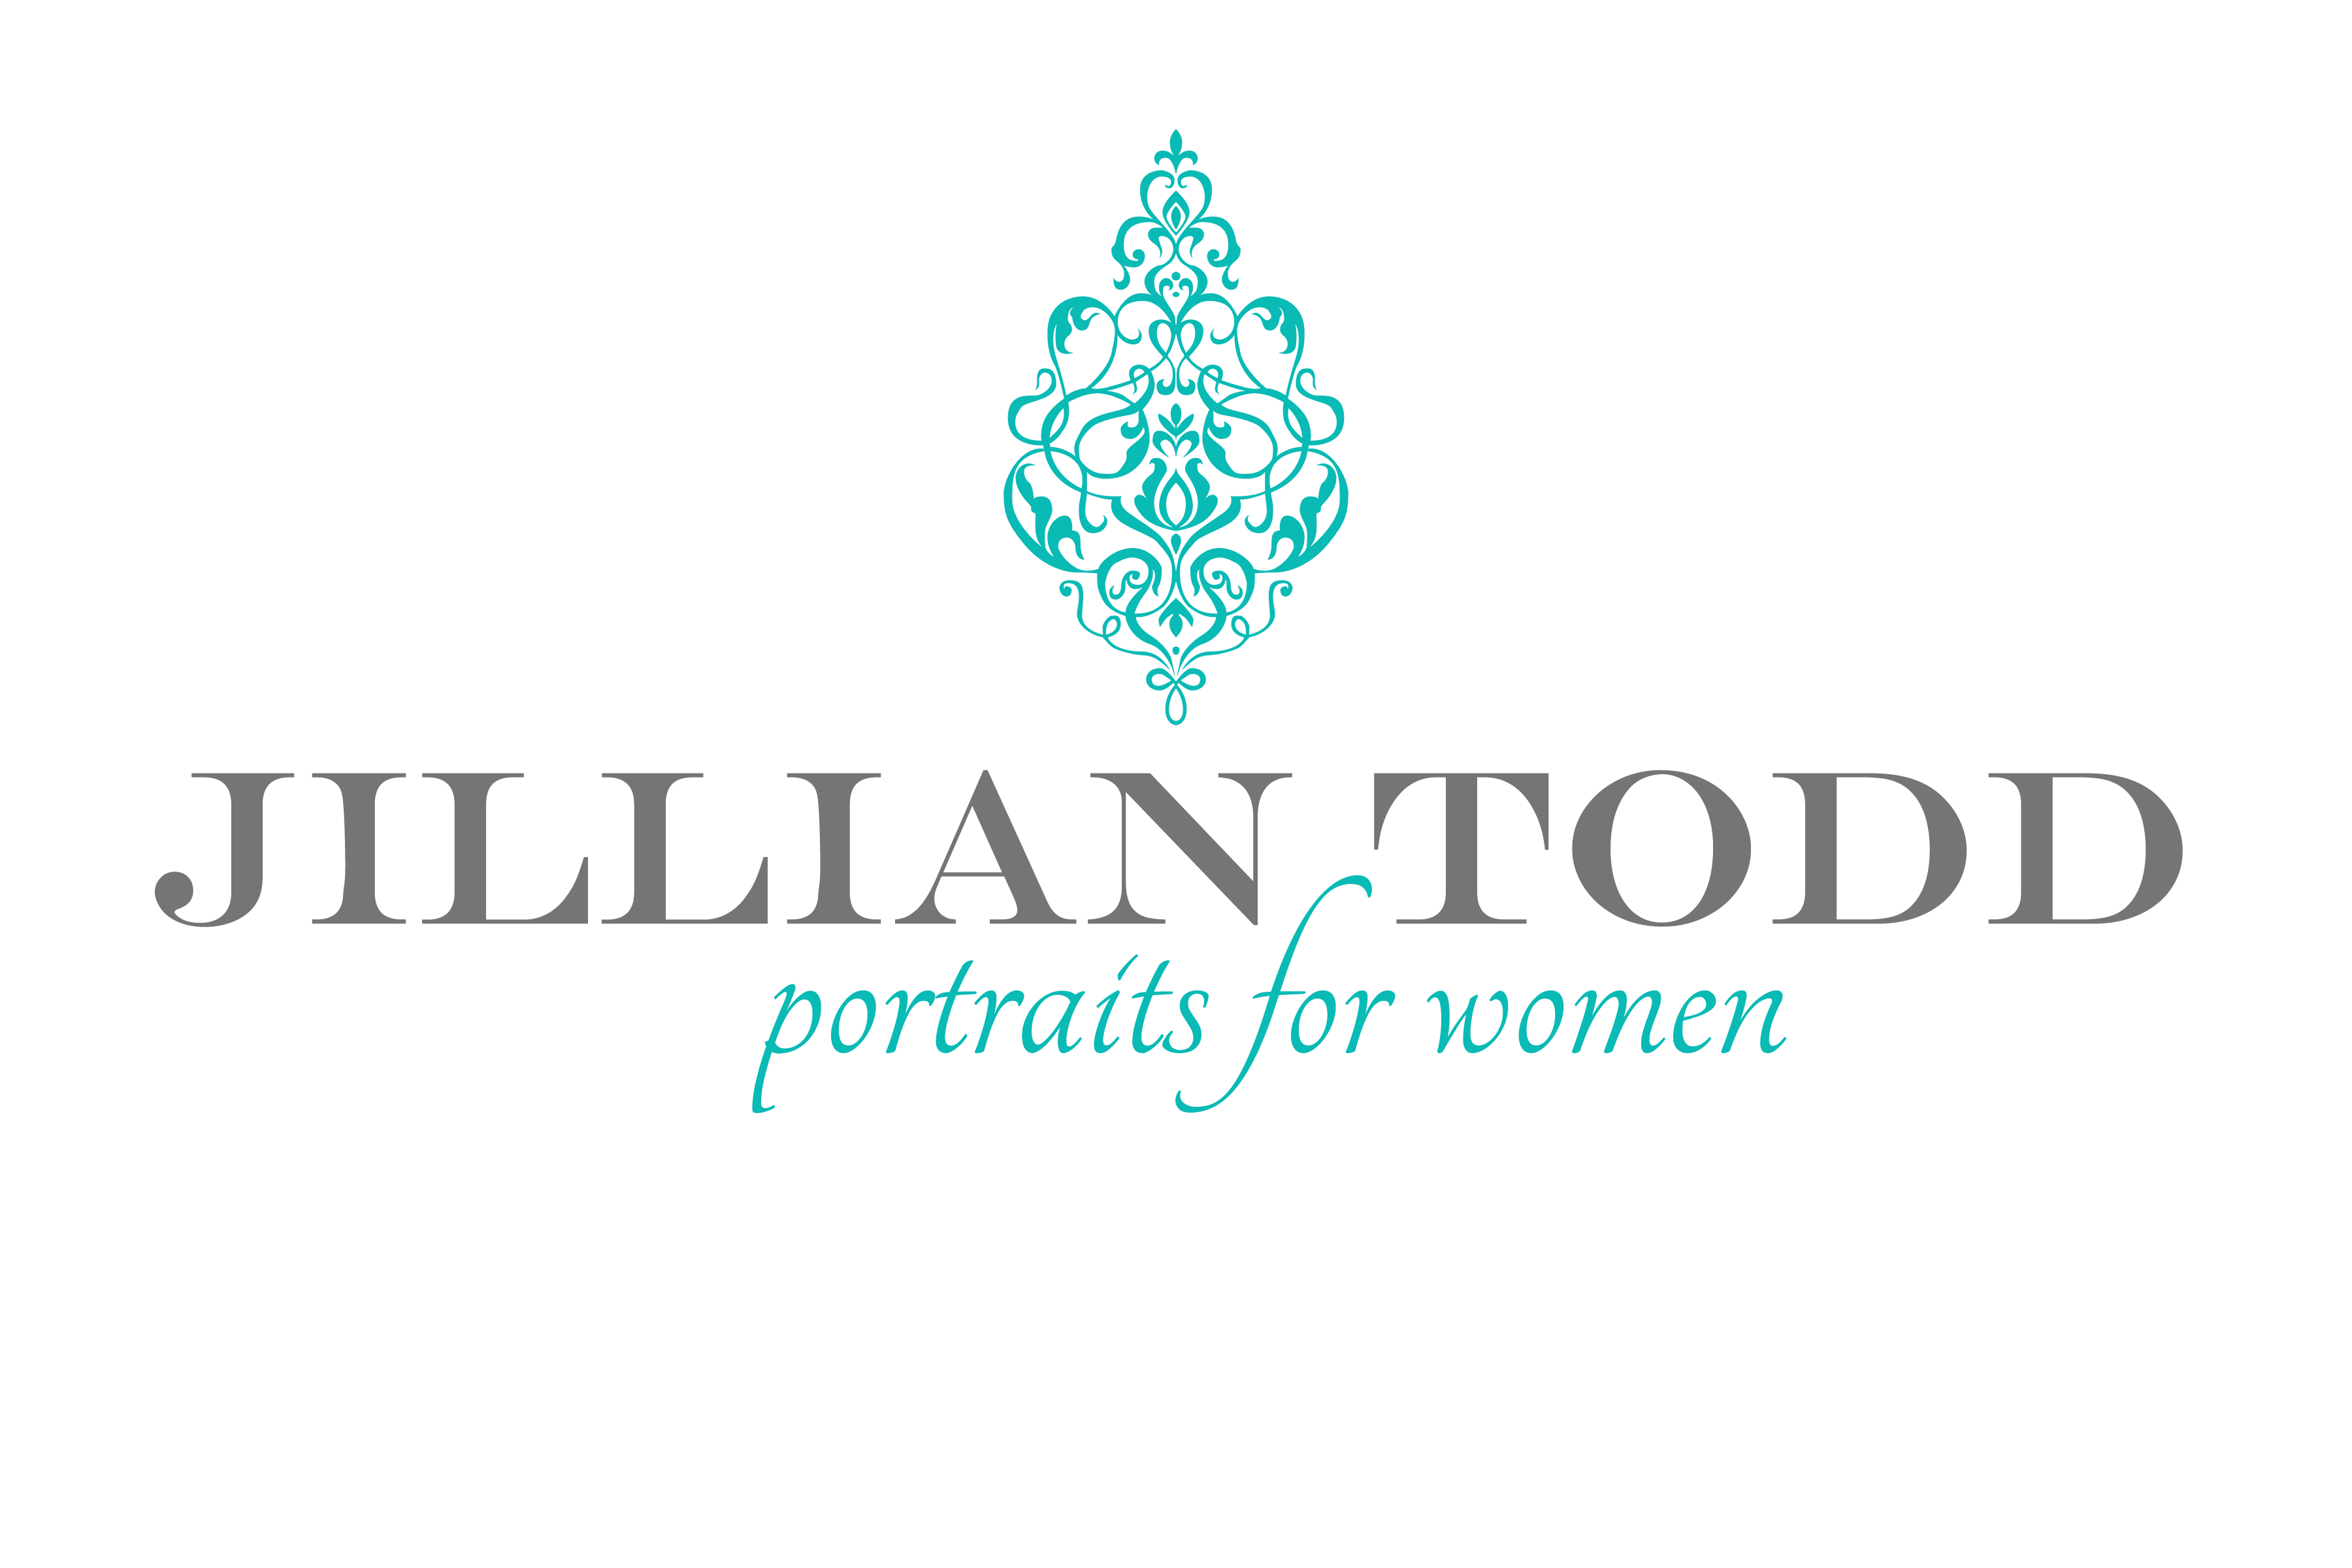 Jillian Todd logo